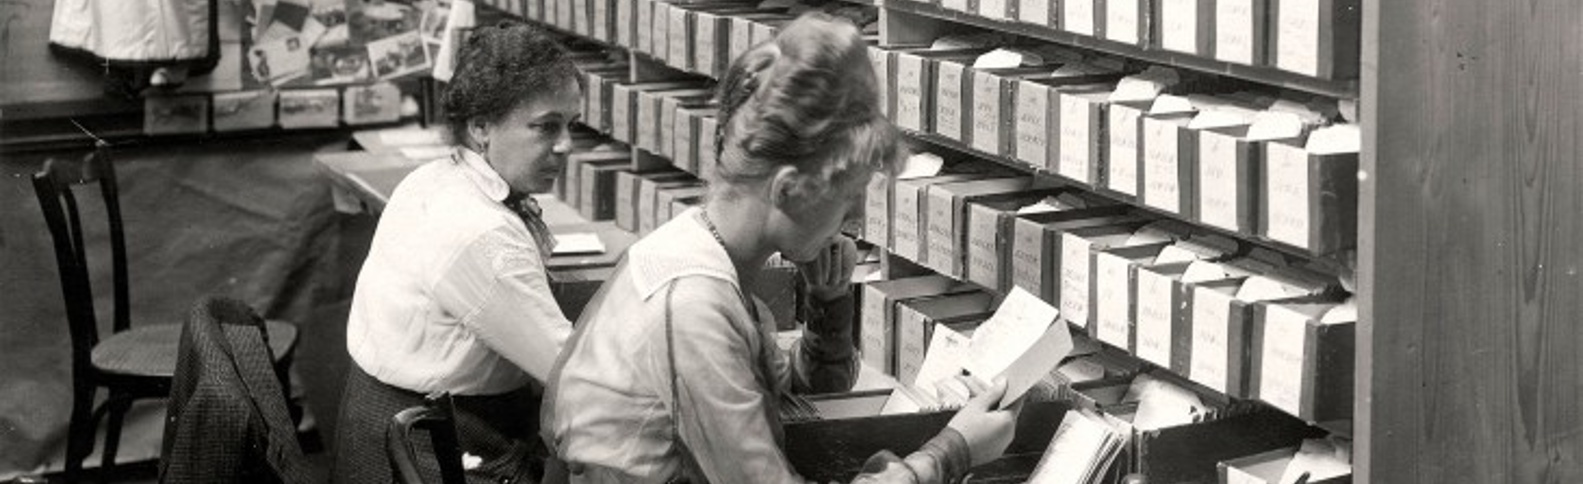 El Día Internacional de los Archivos, una oportunidad para conocer más sobre Cruz Roja